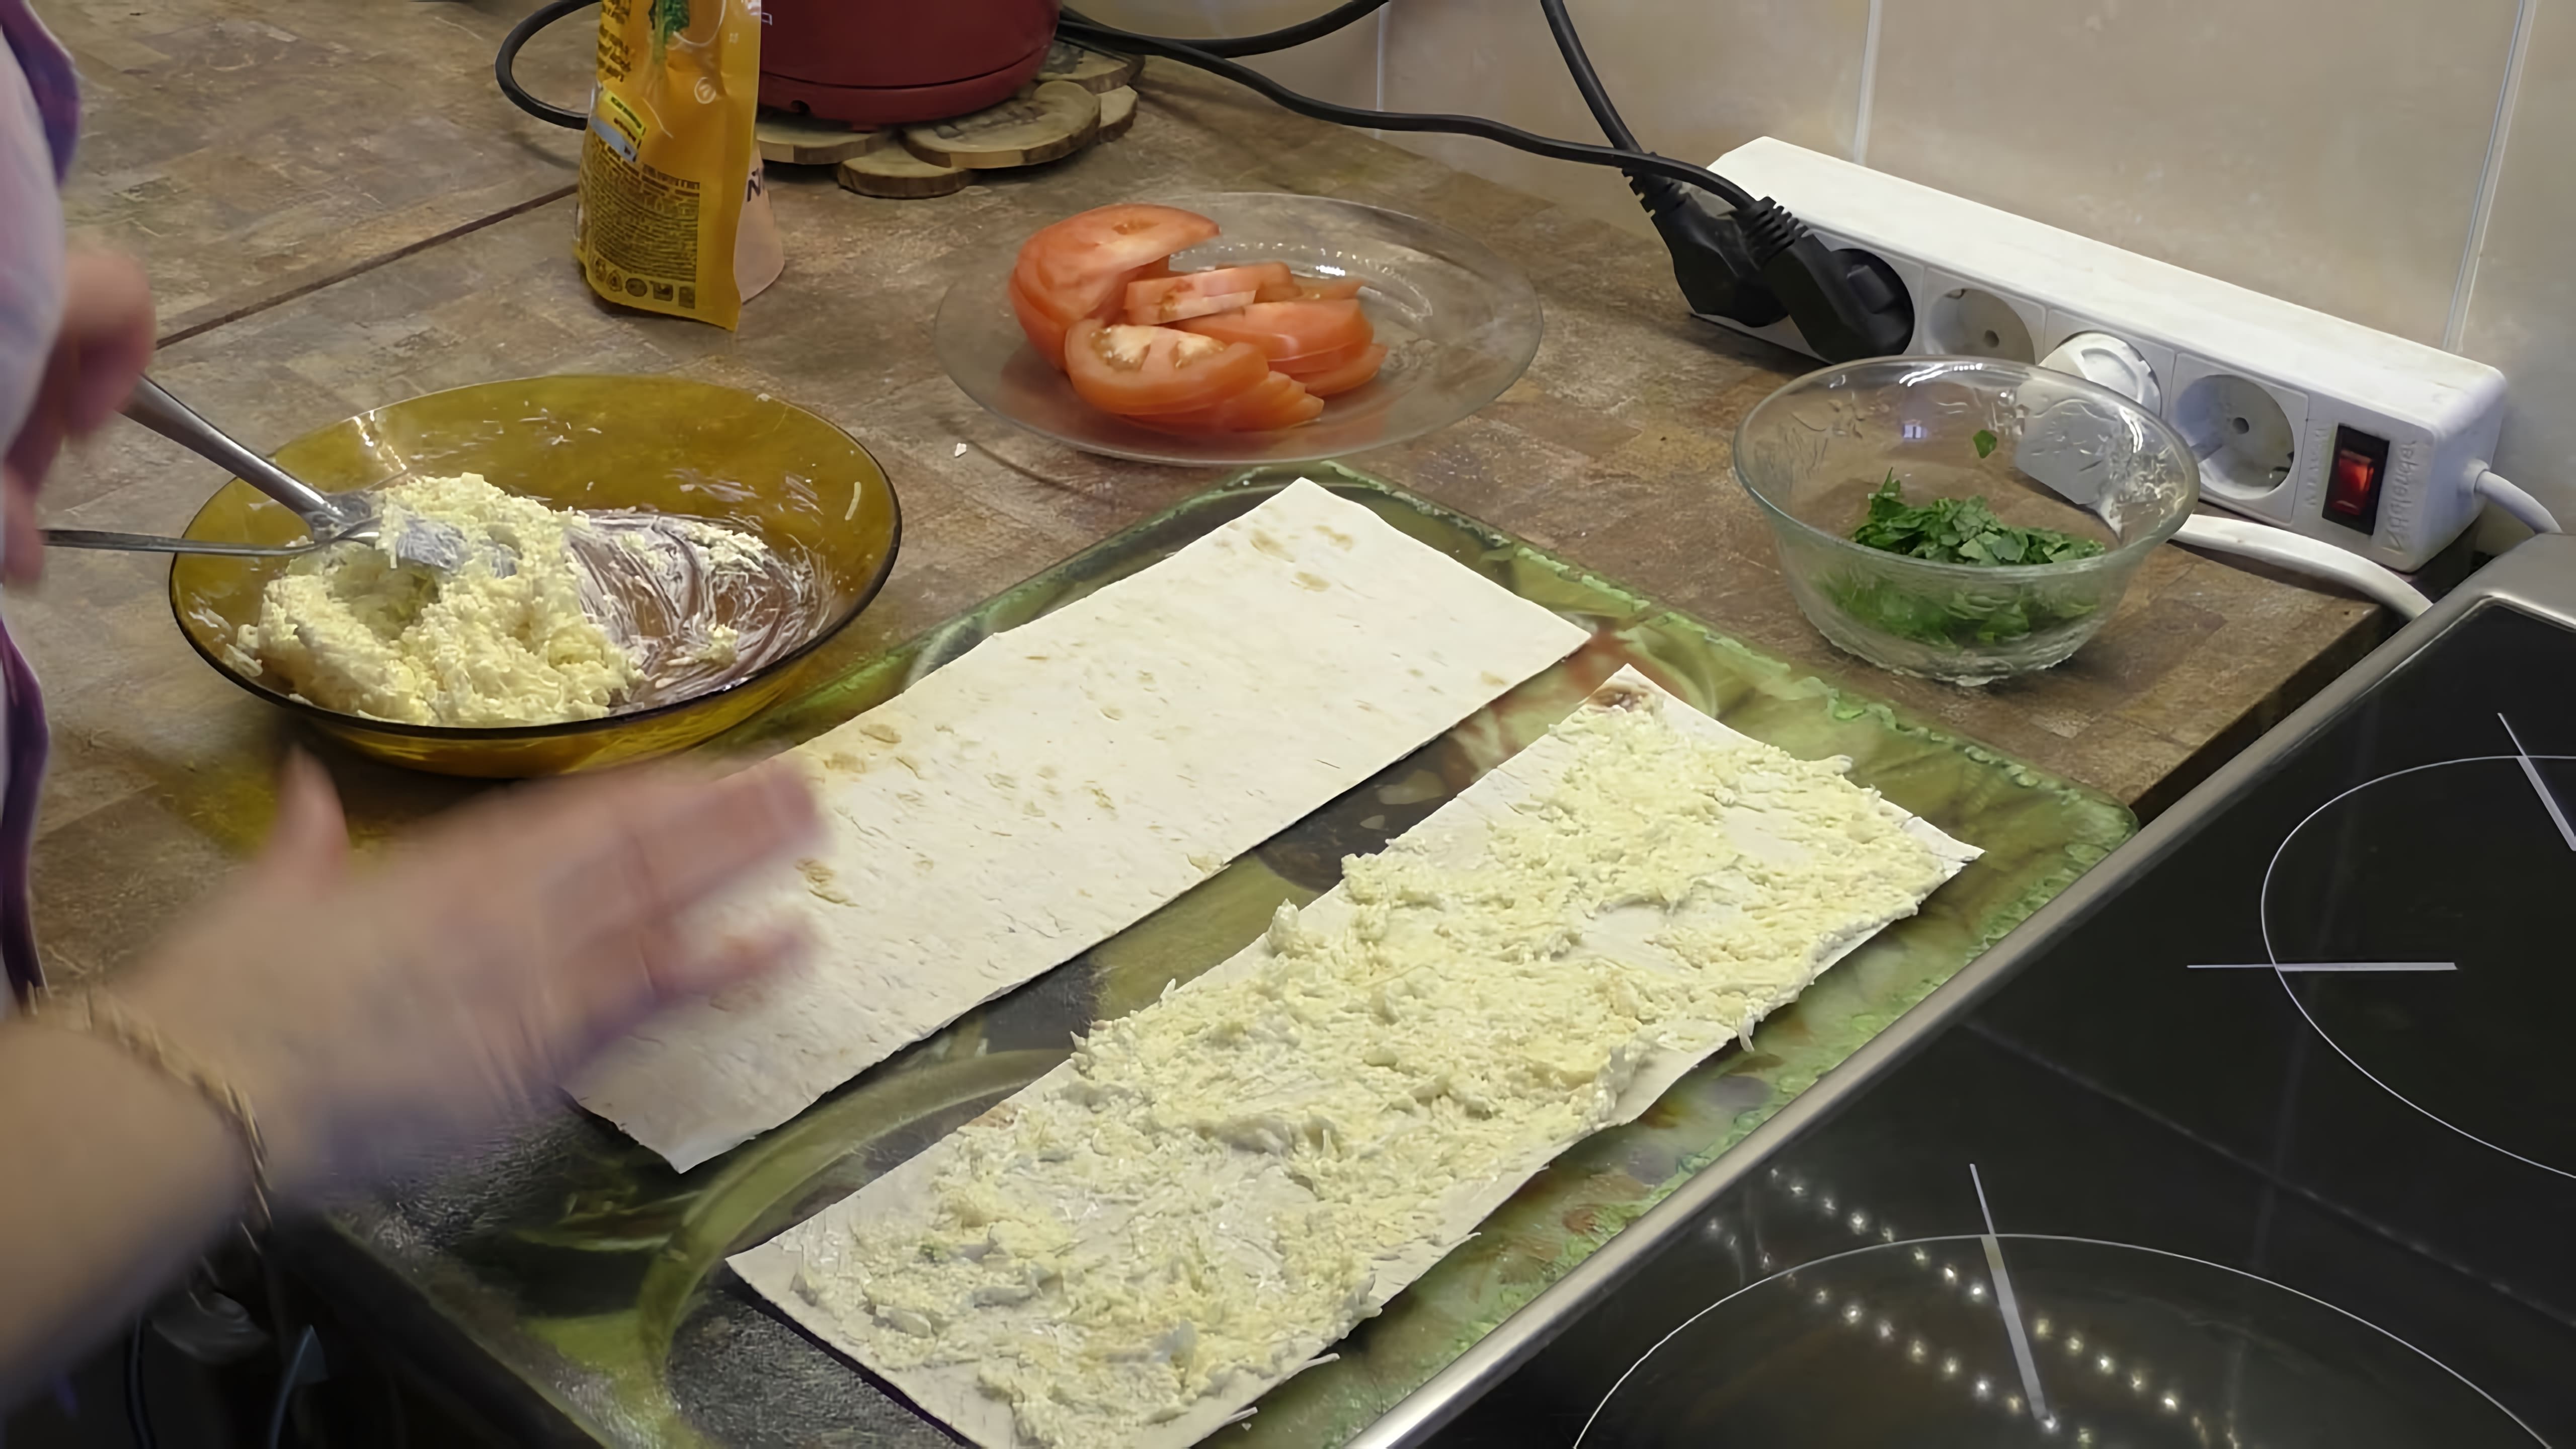 В этом видео демонстрируется процесс приготовления лаваша с начинкой на сковородке